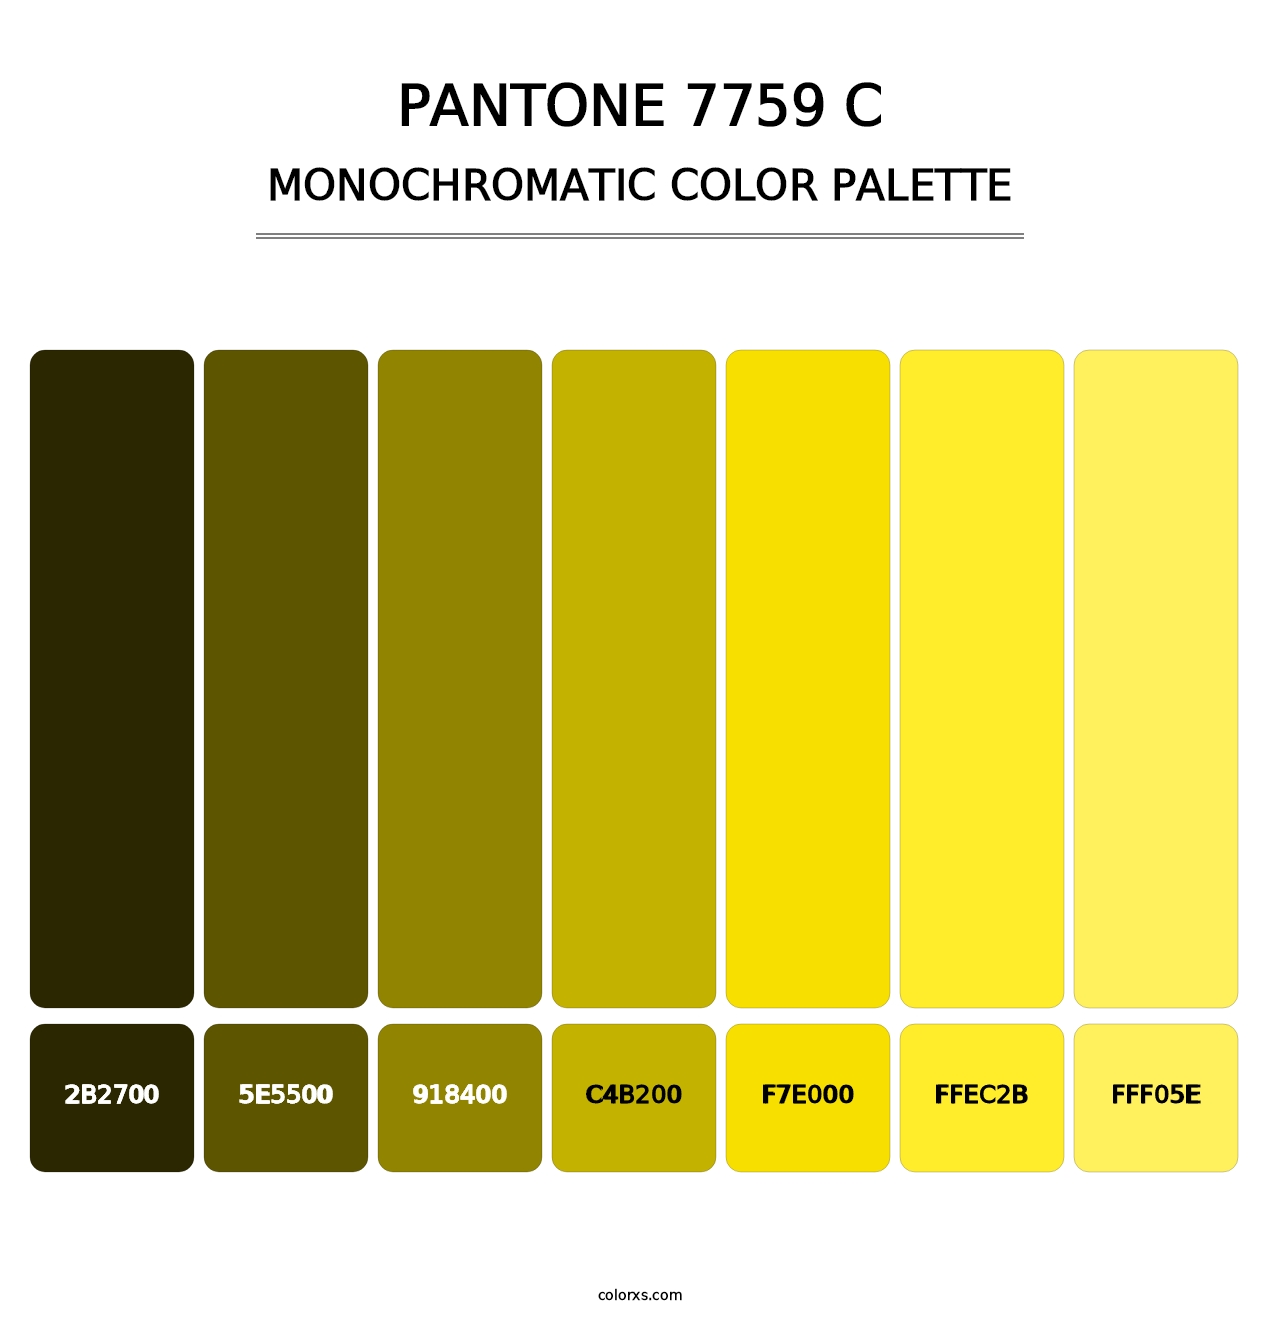 PANTONE 7759 C - Monochromatic Color Palette